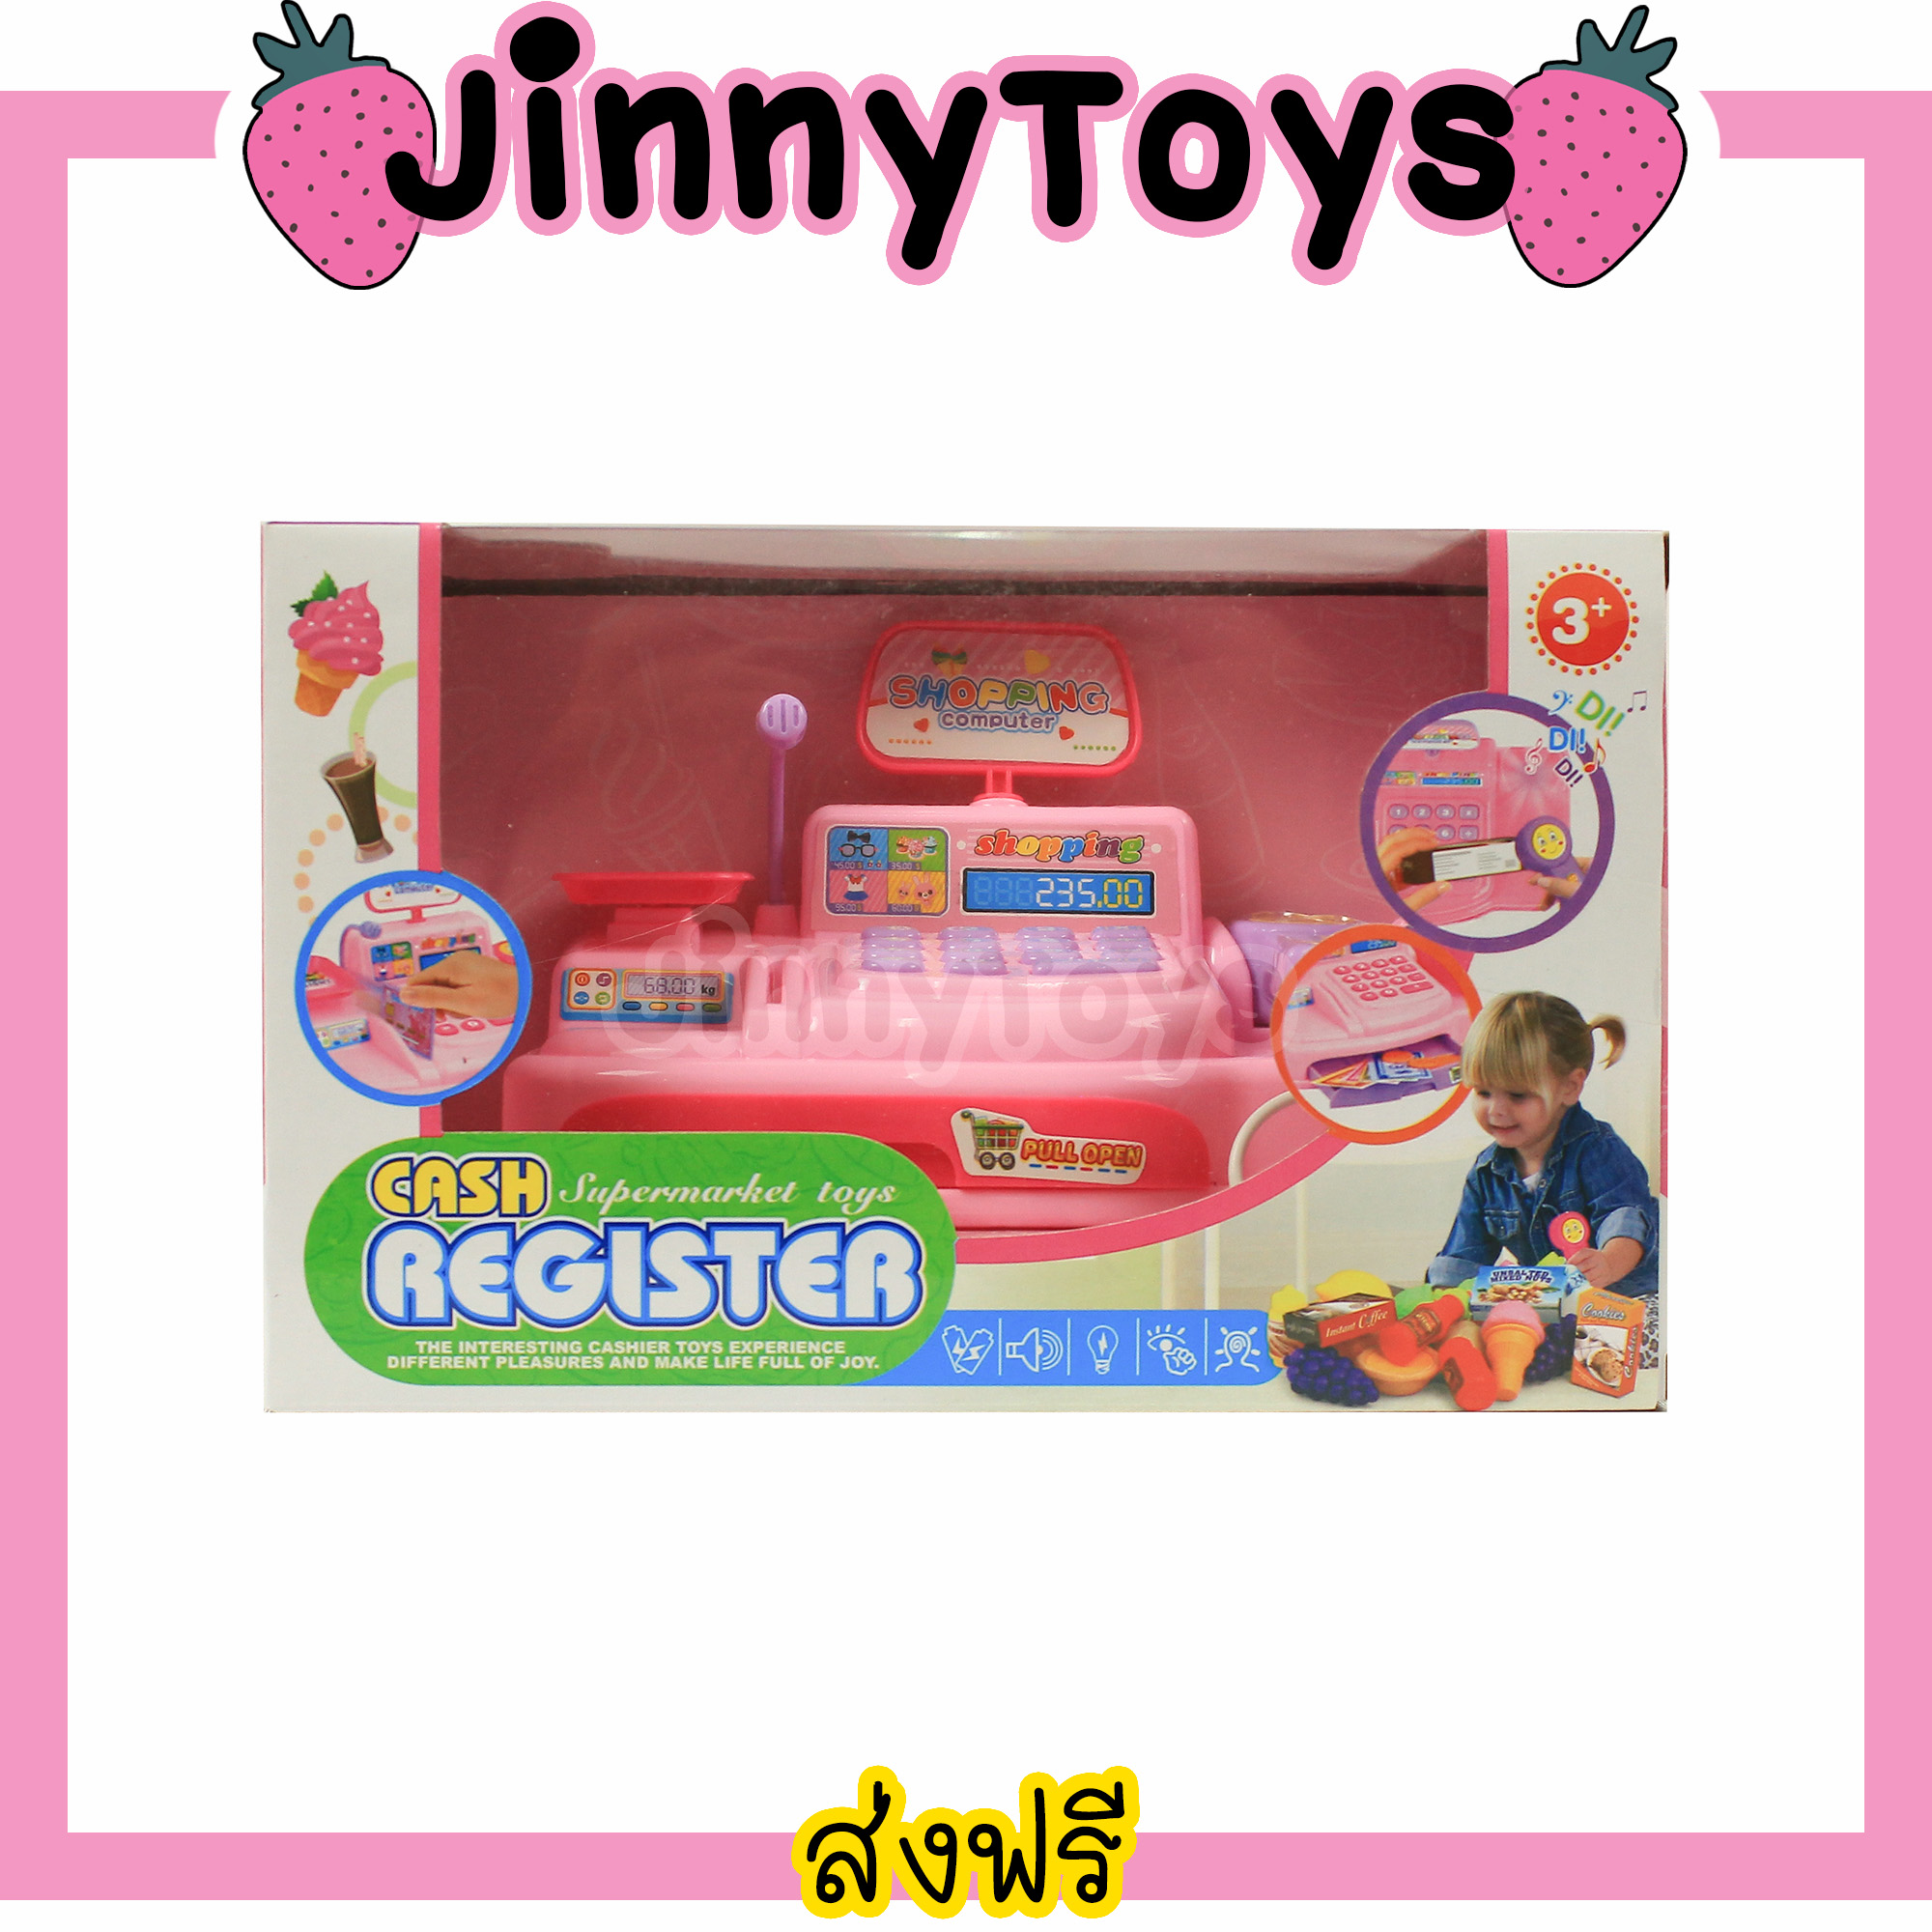 Jinny Toys ของเล่นเด็ก แคทเชียร์ ของเล่นแคชเชีย สีชมพู Cash Register Supermarket Toys แคทเชียร์ของเล่น ของเล่นแคชเชียร์ ของเล่นซุปเปอร์มาร์เก็ต แคทเชียของเล่น แคชเชียร์เด็ก ของเล่น แคทเชีย ชุดแคชเชีย ของเล่นจำลอง ของเล่นเด็กหญิง ของเล่นเด็กผู้หญิง